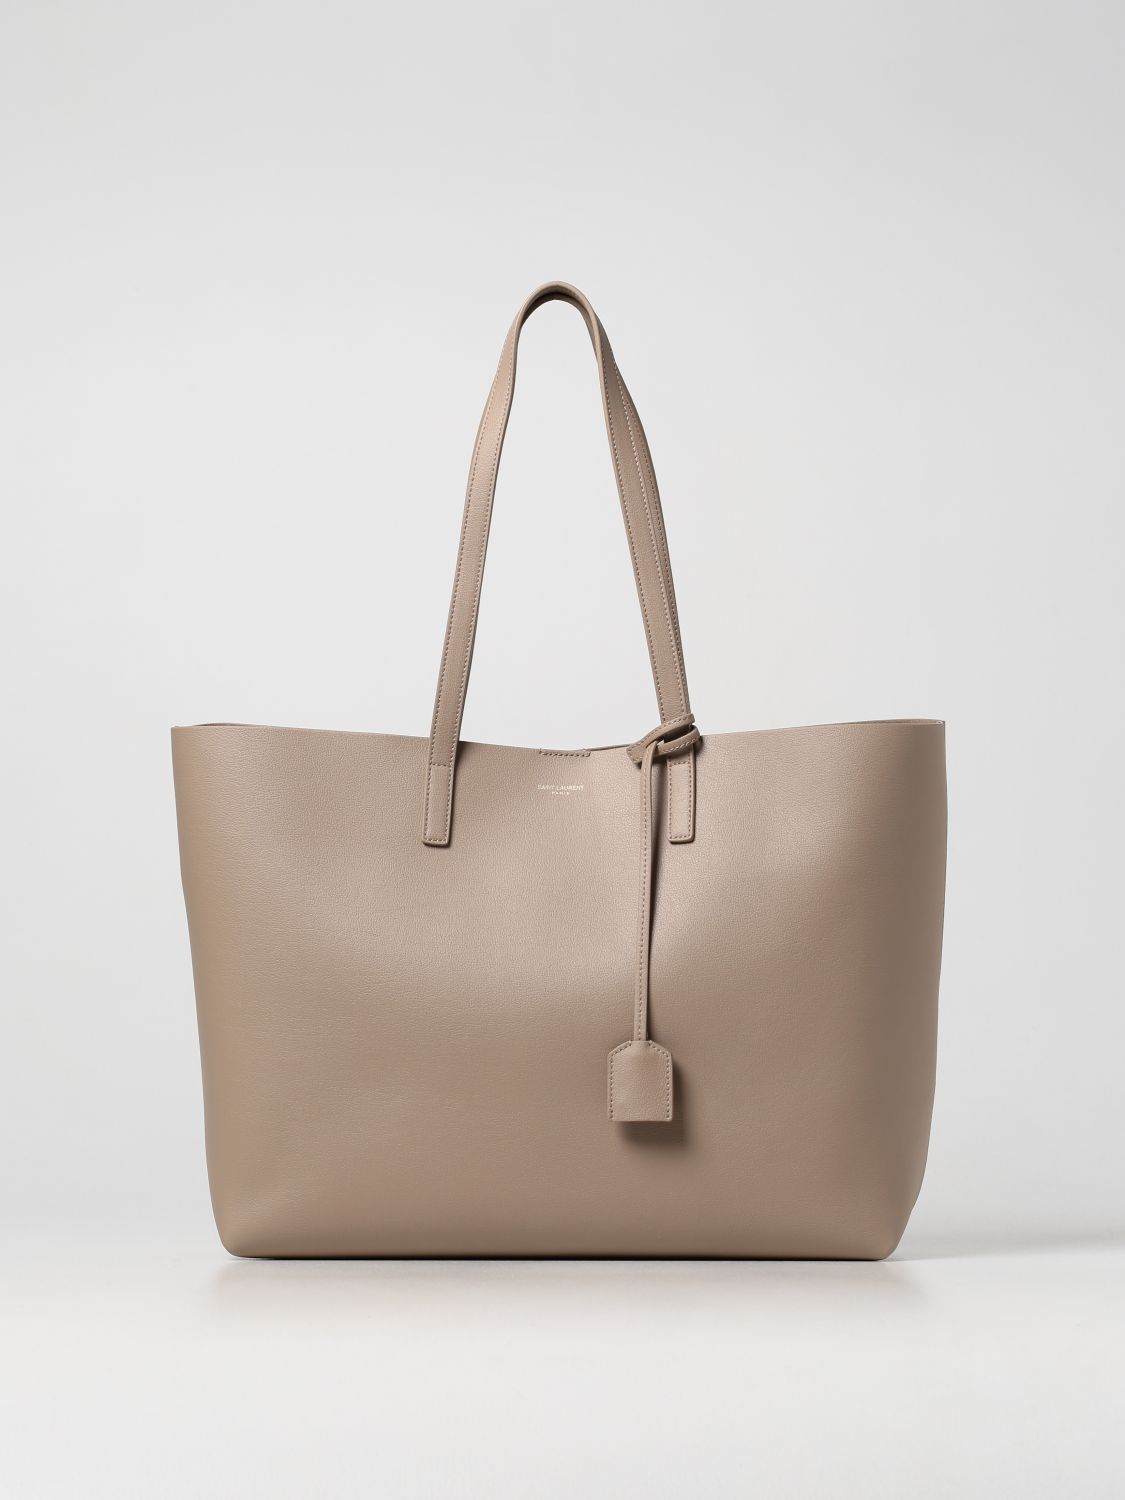 Saint Laurent Bags for Women - FARFETCH